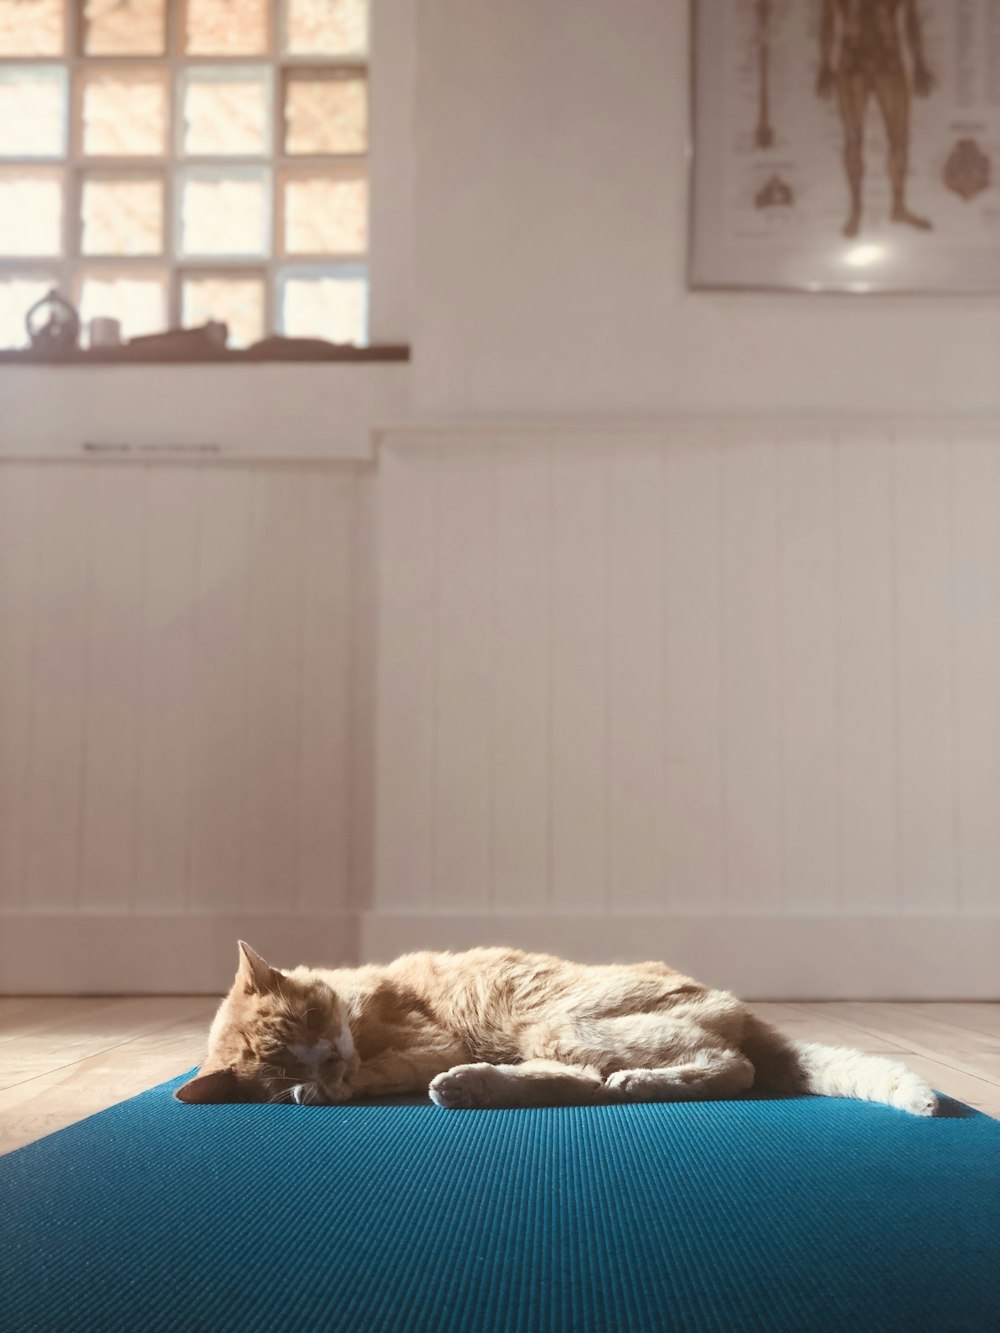 gato atigrado naranja acostado en una cama azul